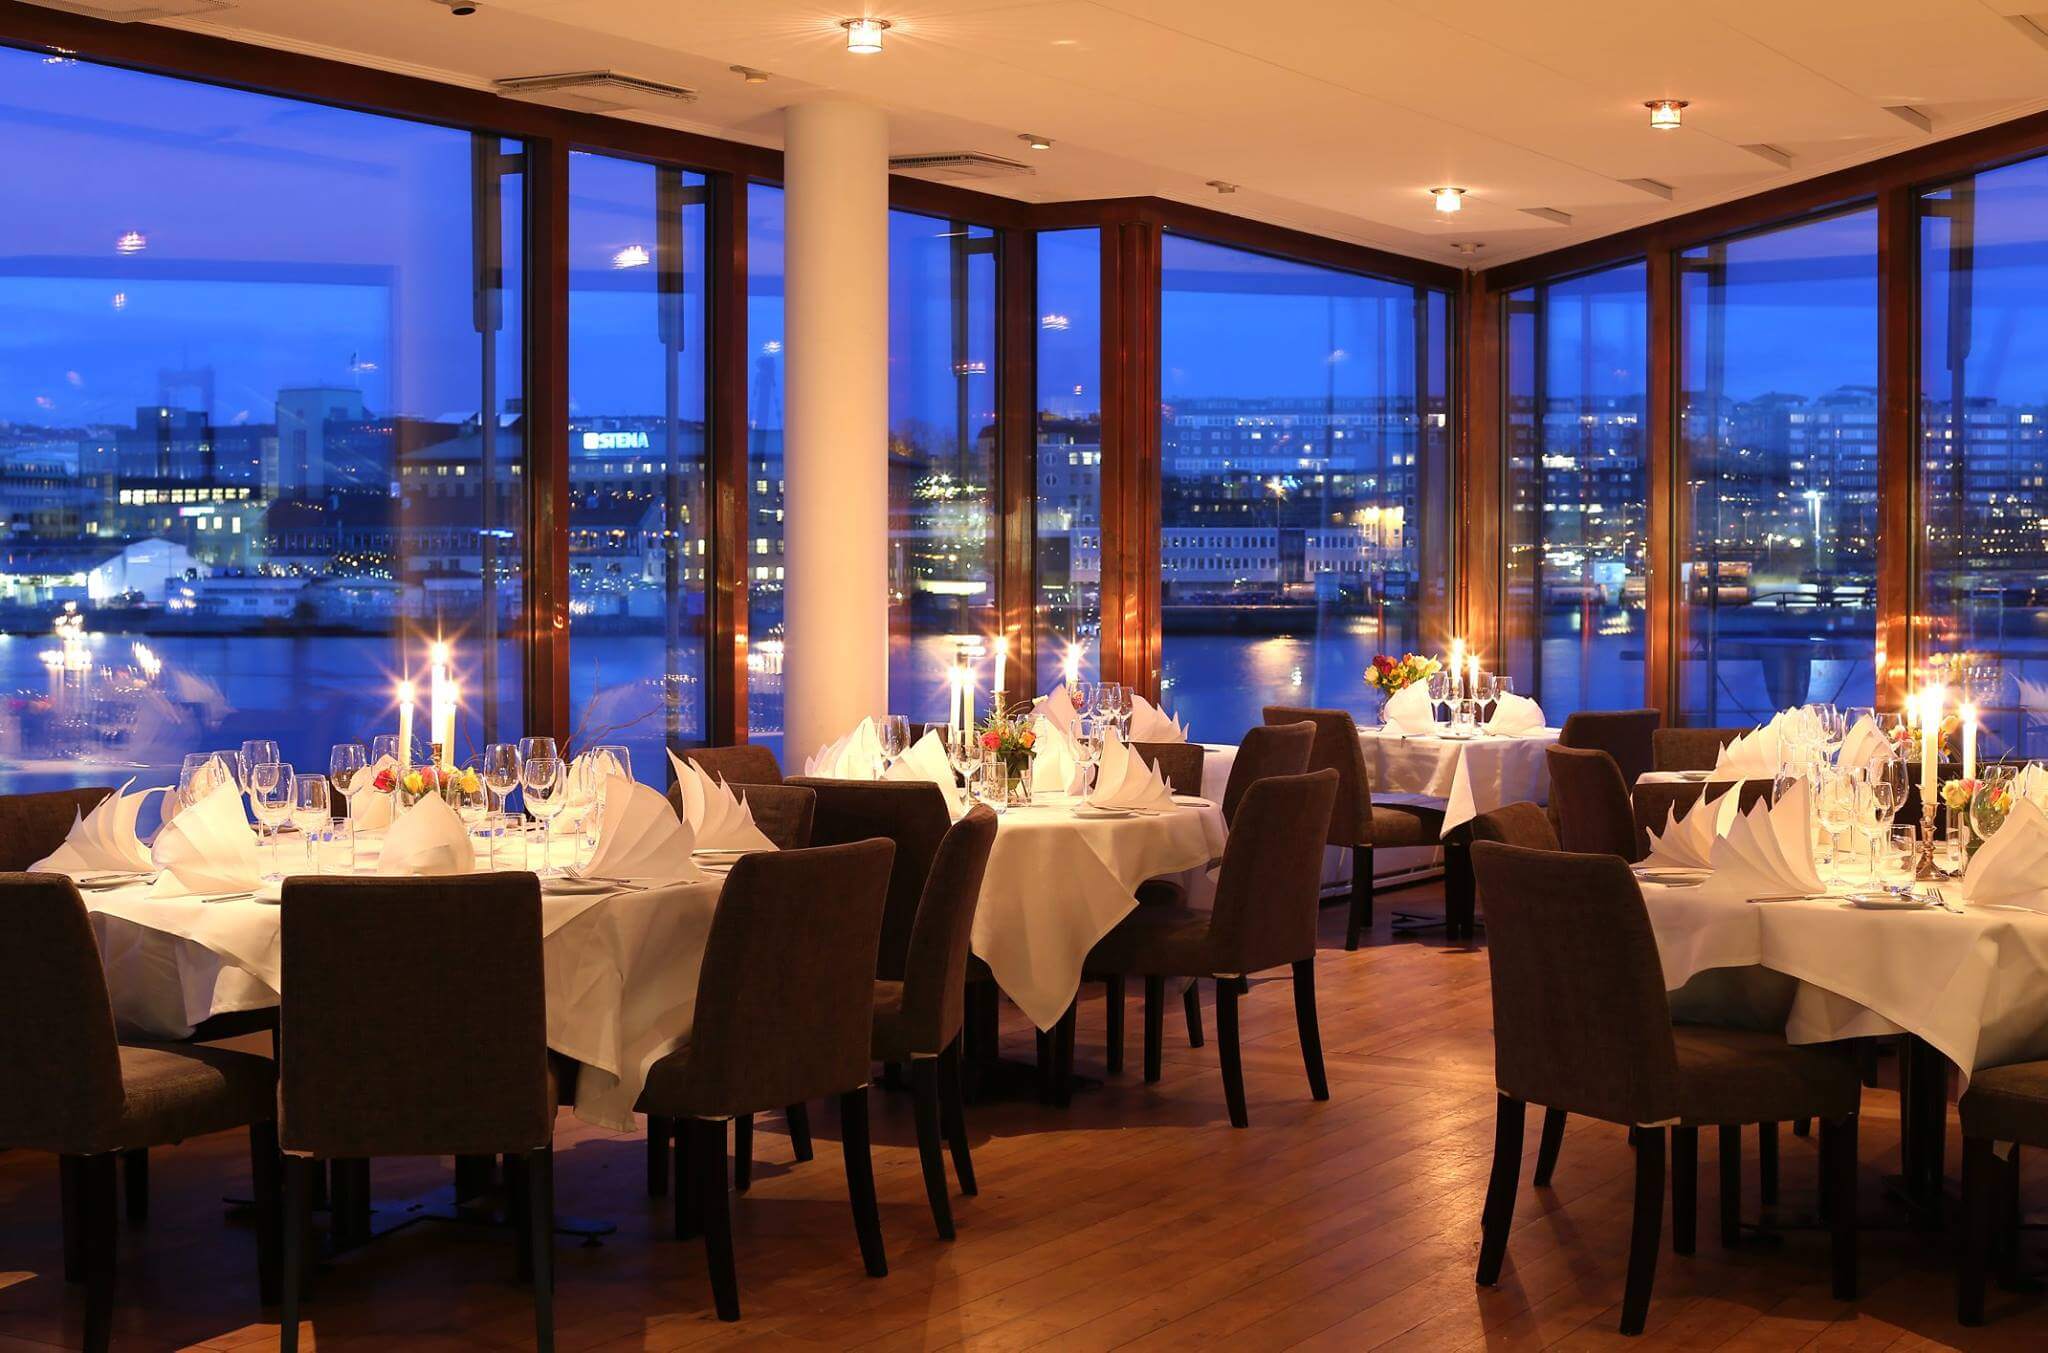 Längst ut på Dockpiren i Göteborgs hamninlopp ligger River Restaurant On The Pier